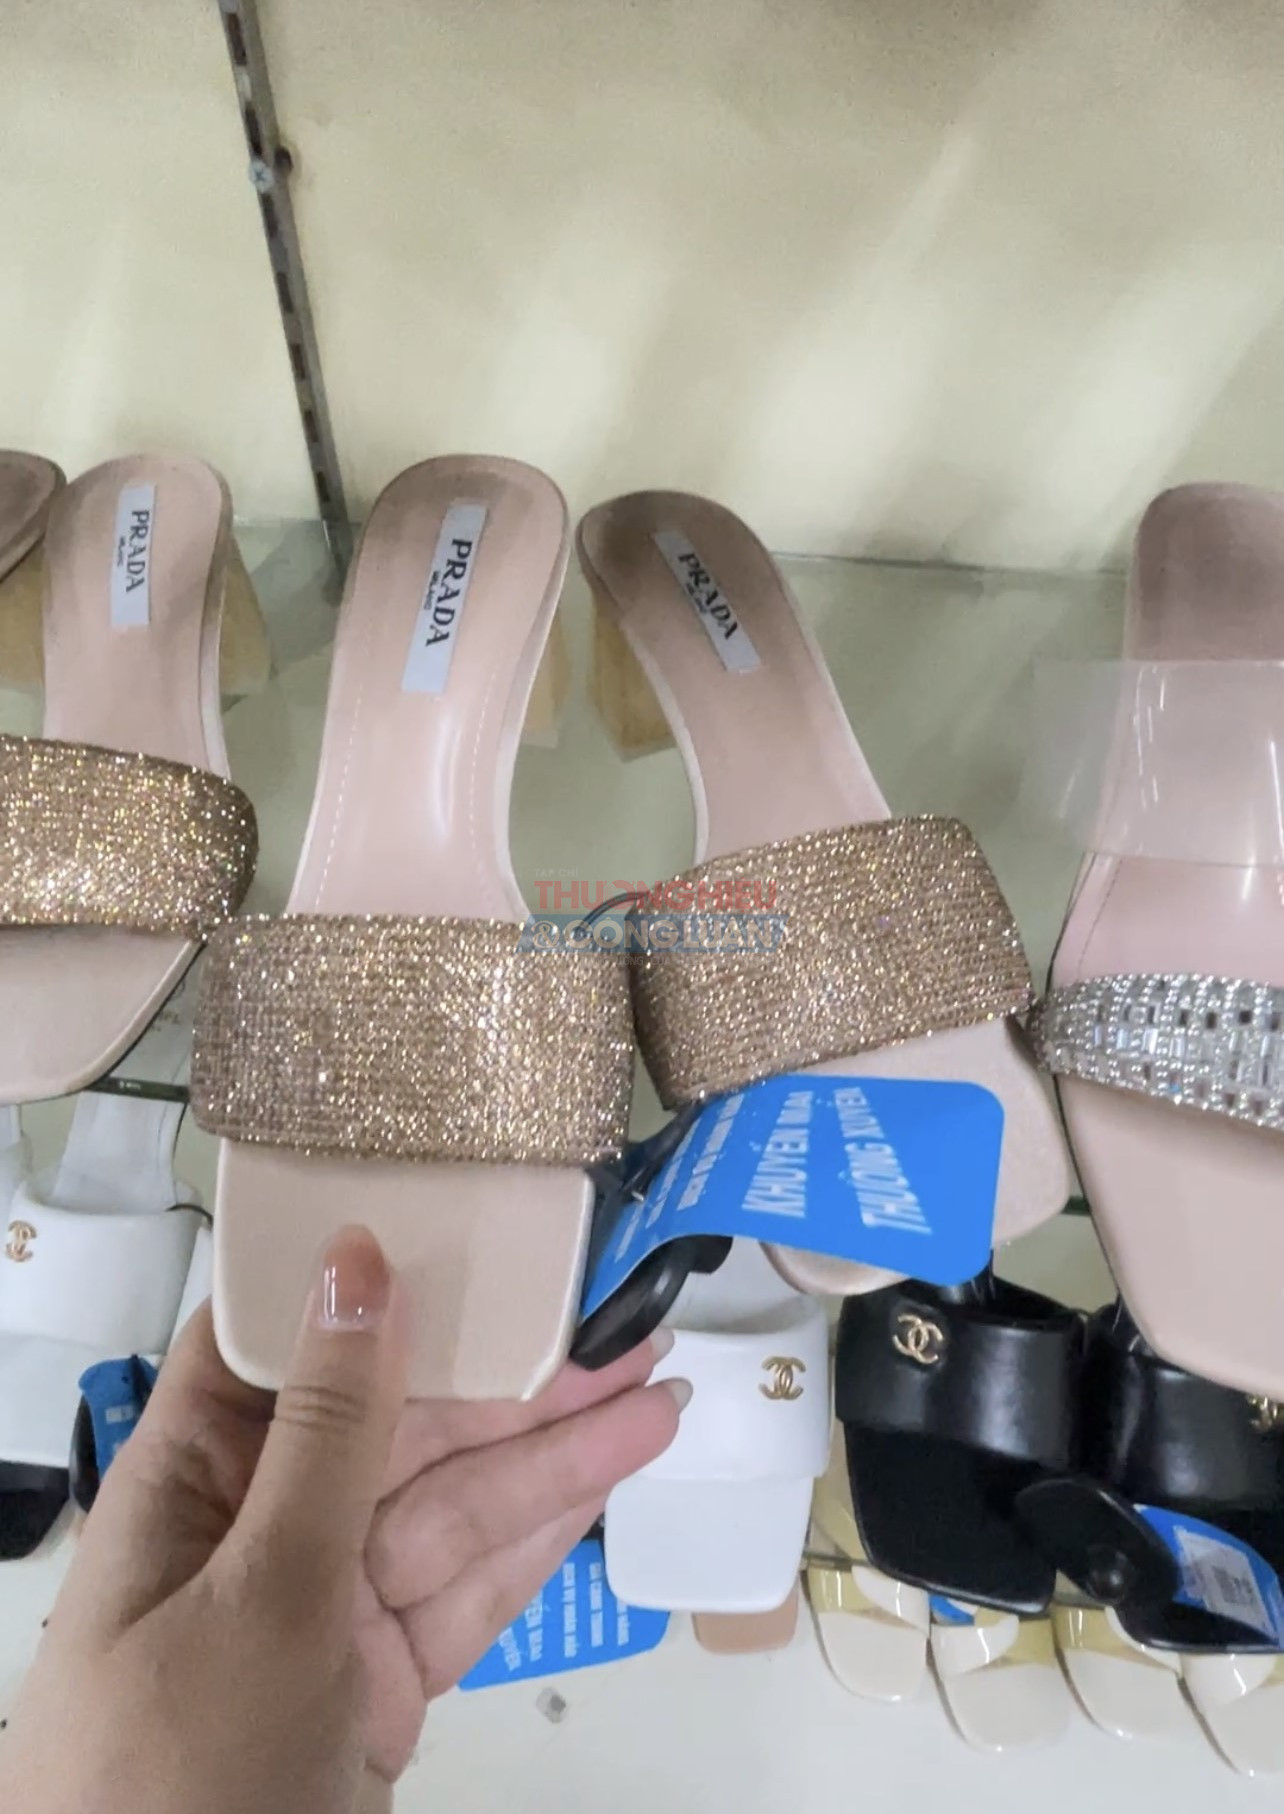 Giày dép nhái, thương hiệu không rõ ràng tại siêu thị Từ Sơn Bắc Ninh